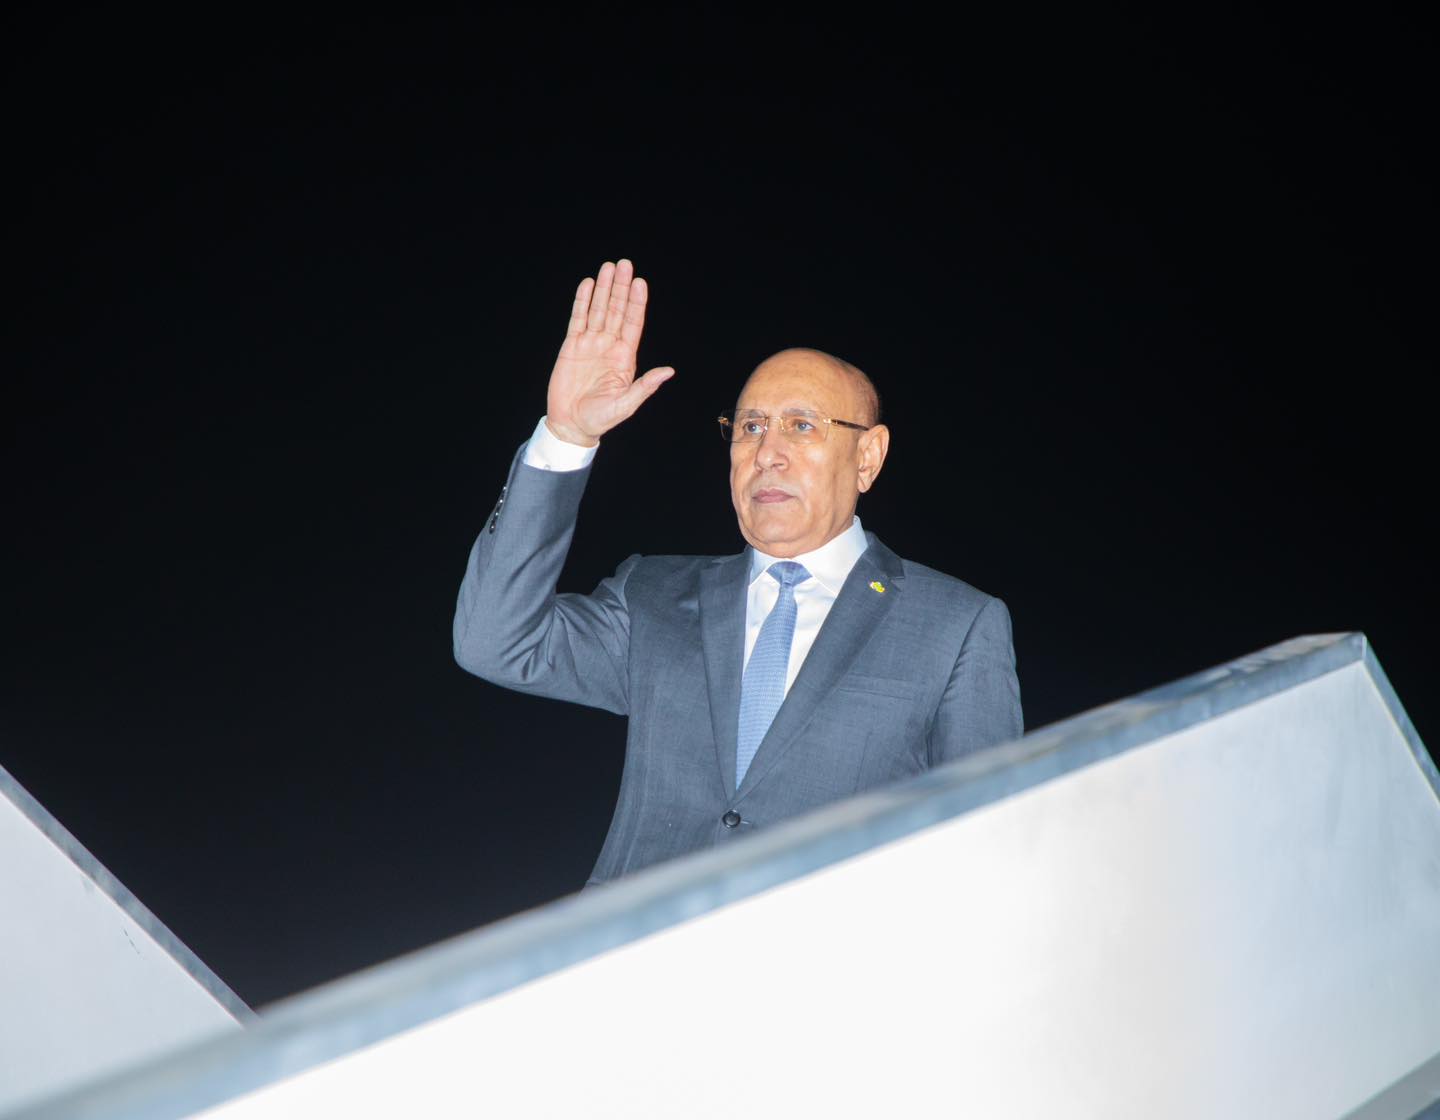 الرئيس غزواني يسافر للبحرين للمشاركة في القمة العربية (…)